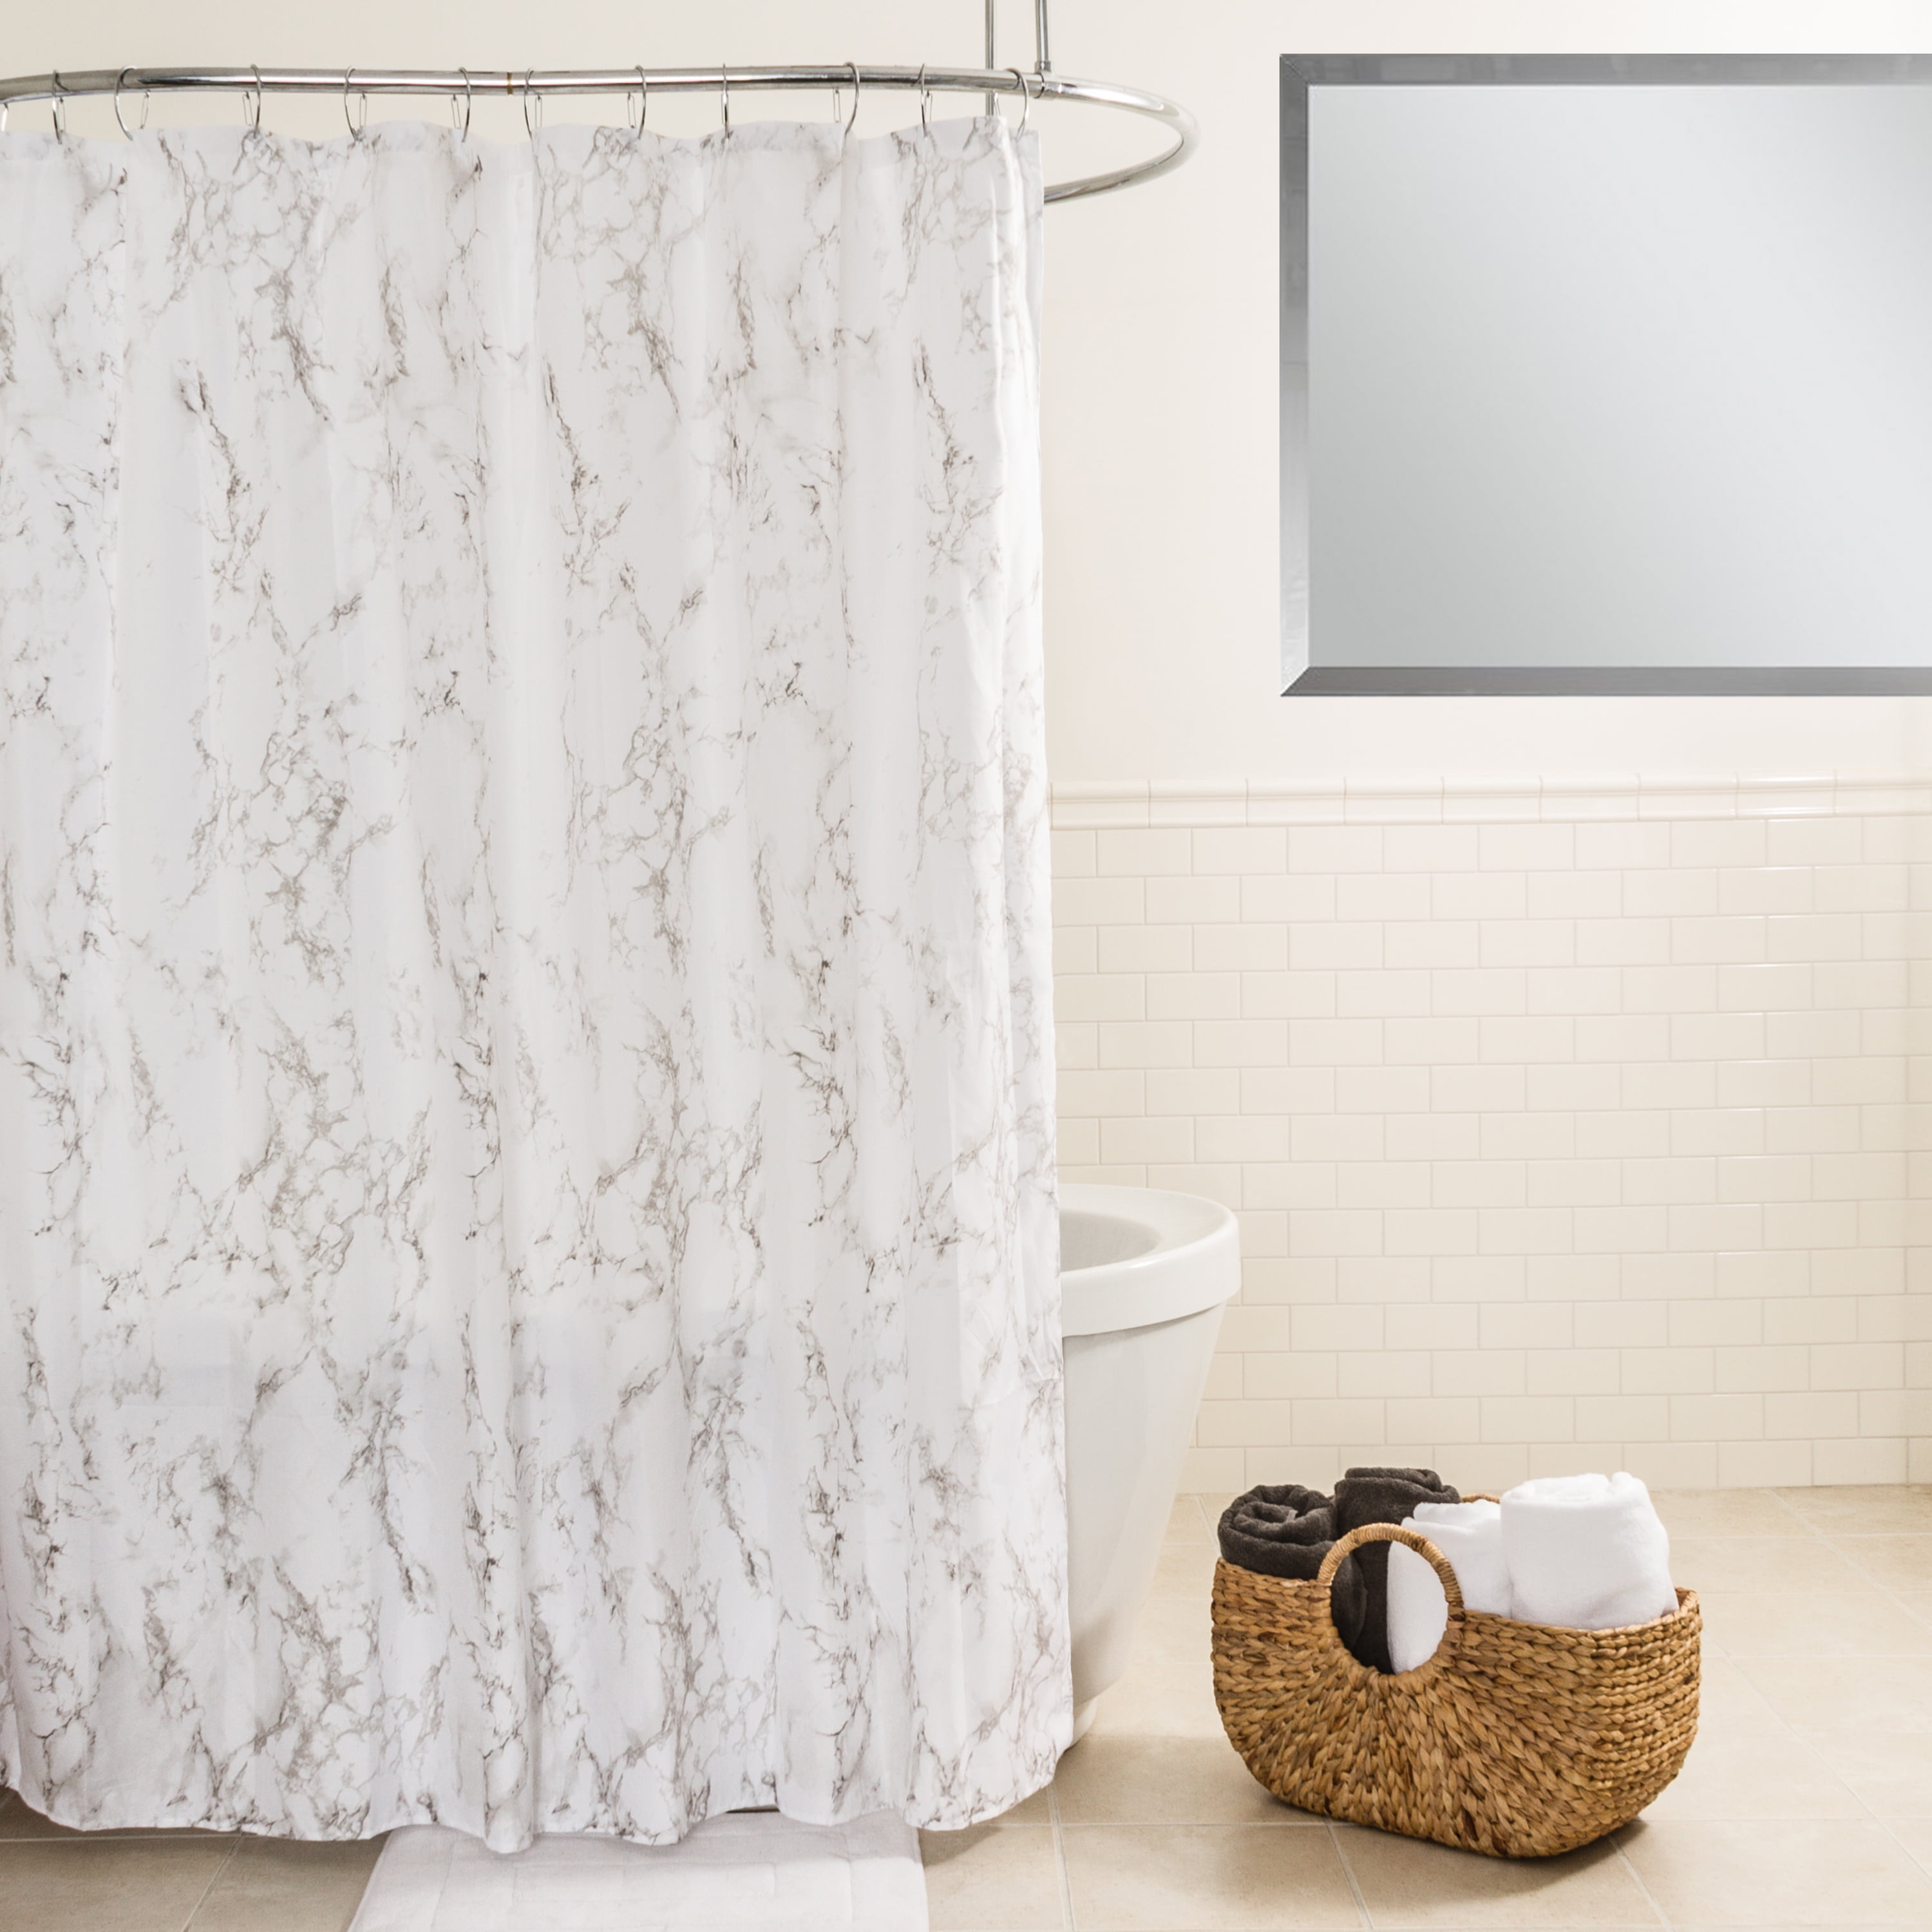 Nice Marble Waterproof Bathroom Polyester Shower Curtain Liner Water Resistant 